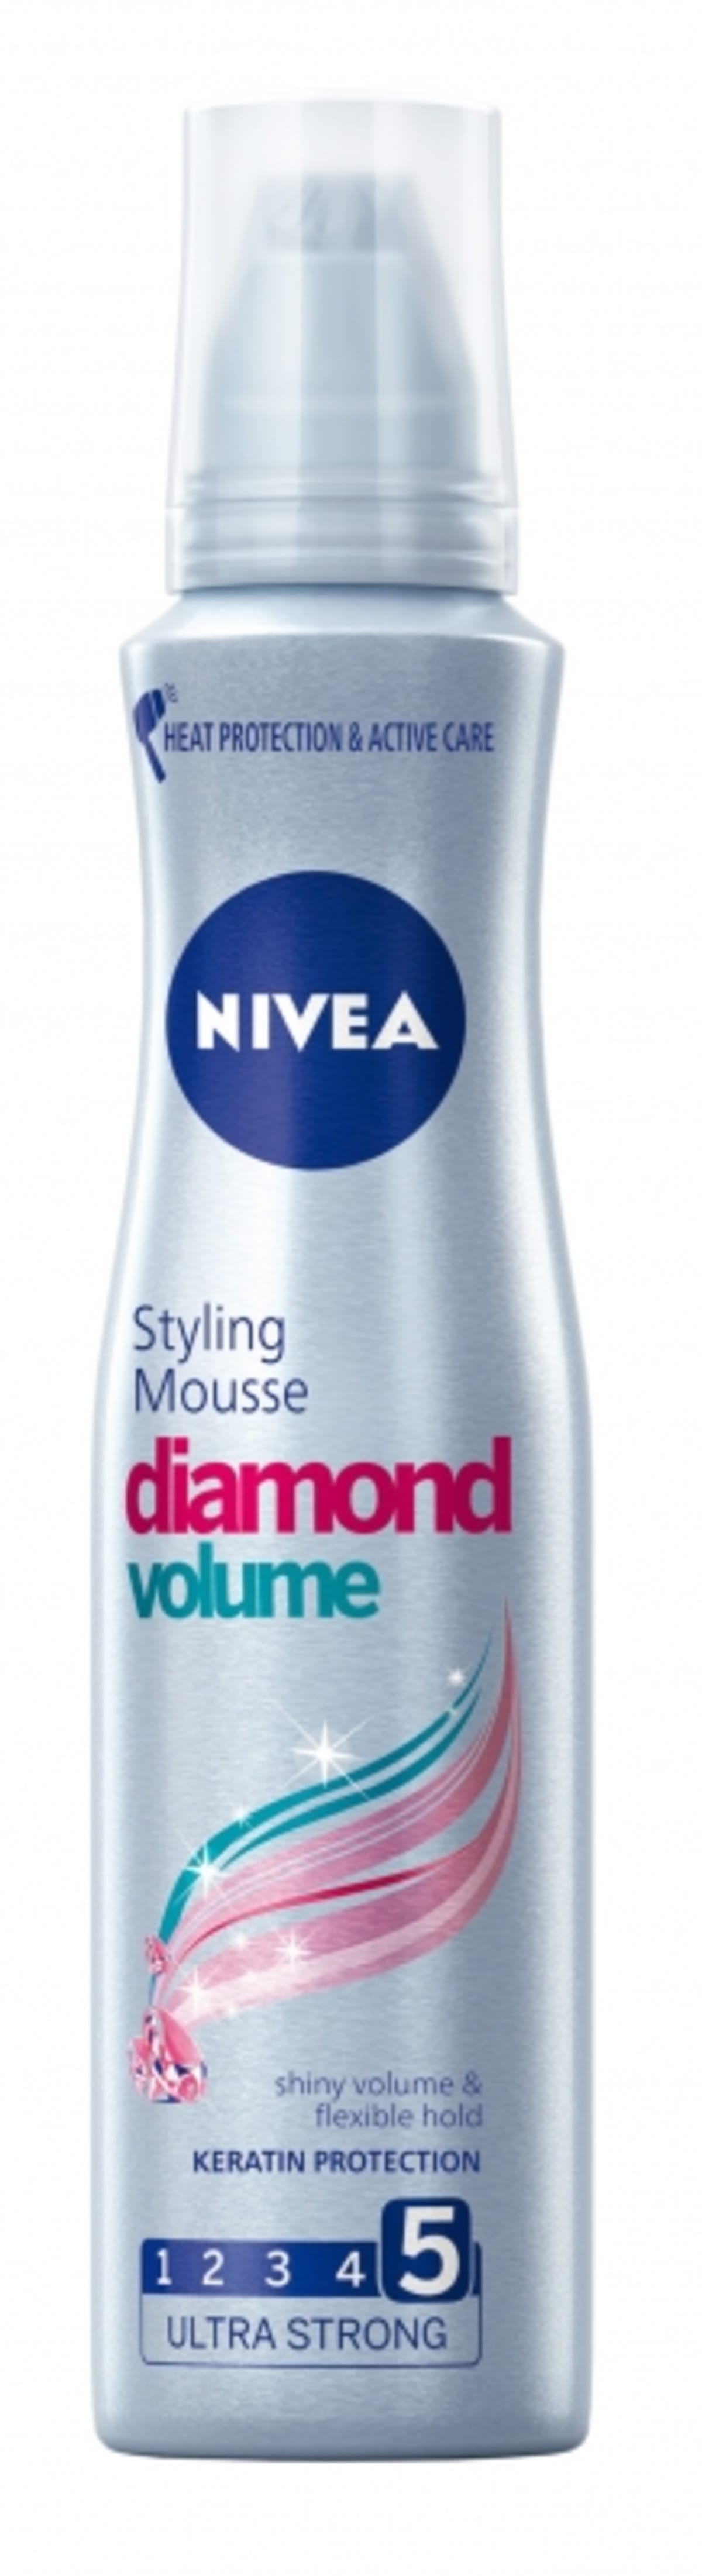 Pěnové tužidlo pro objem a zářivý lesk vlasů Diamond Volume Nivea, 100 Kč